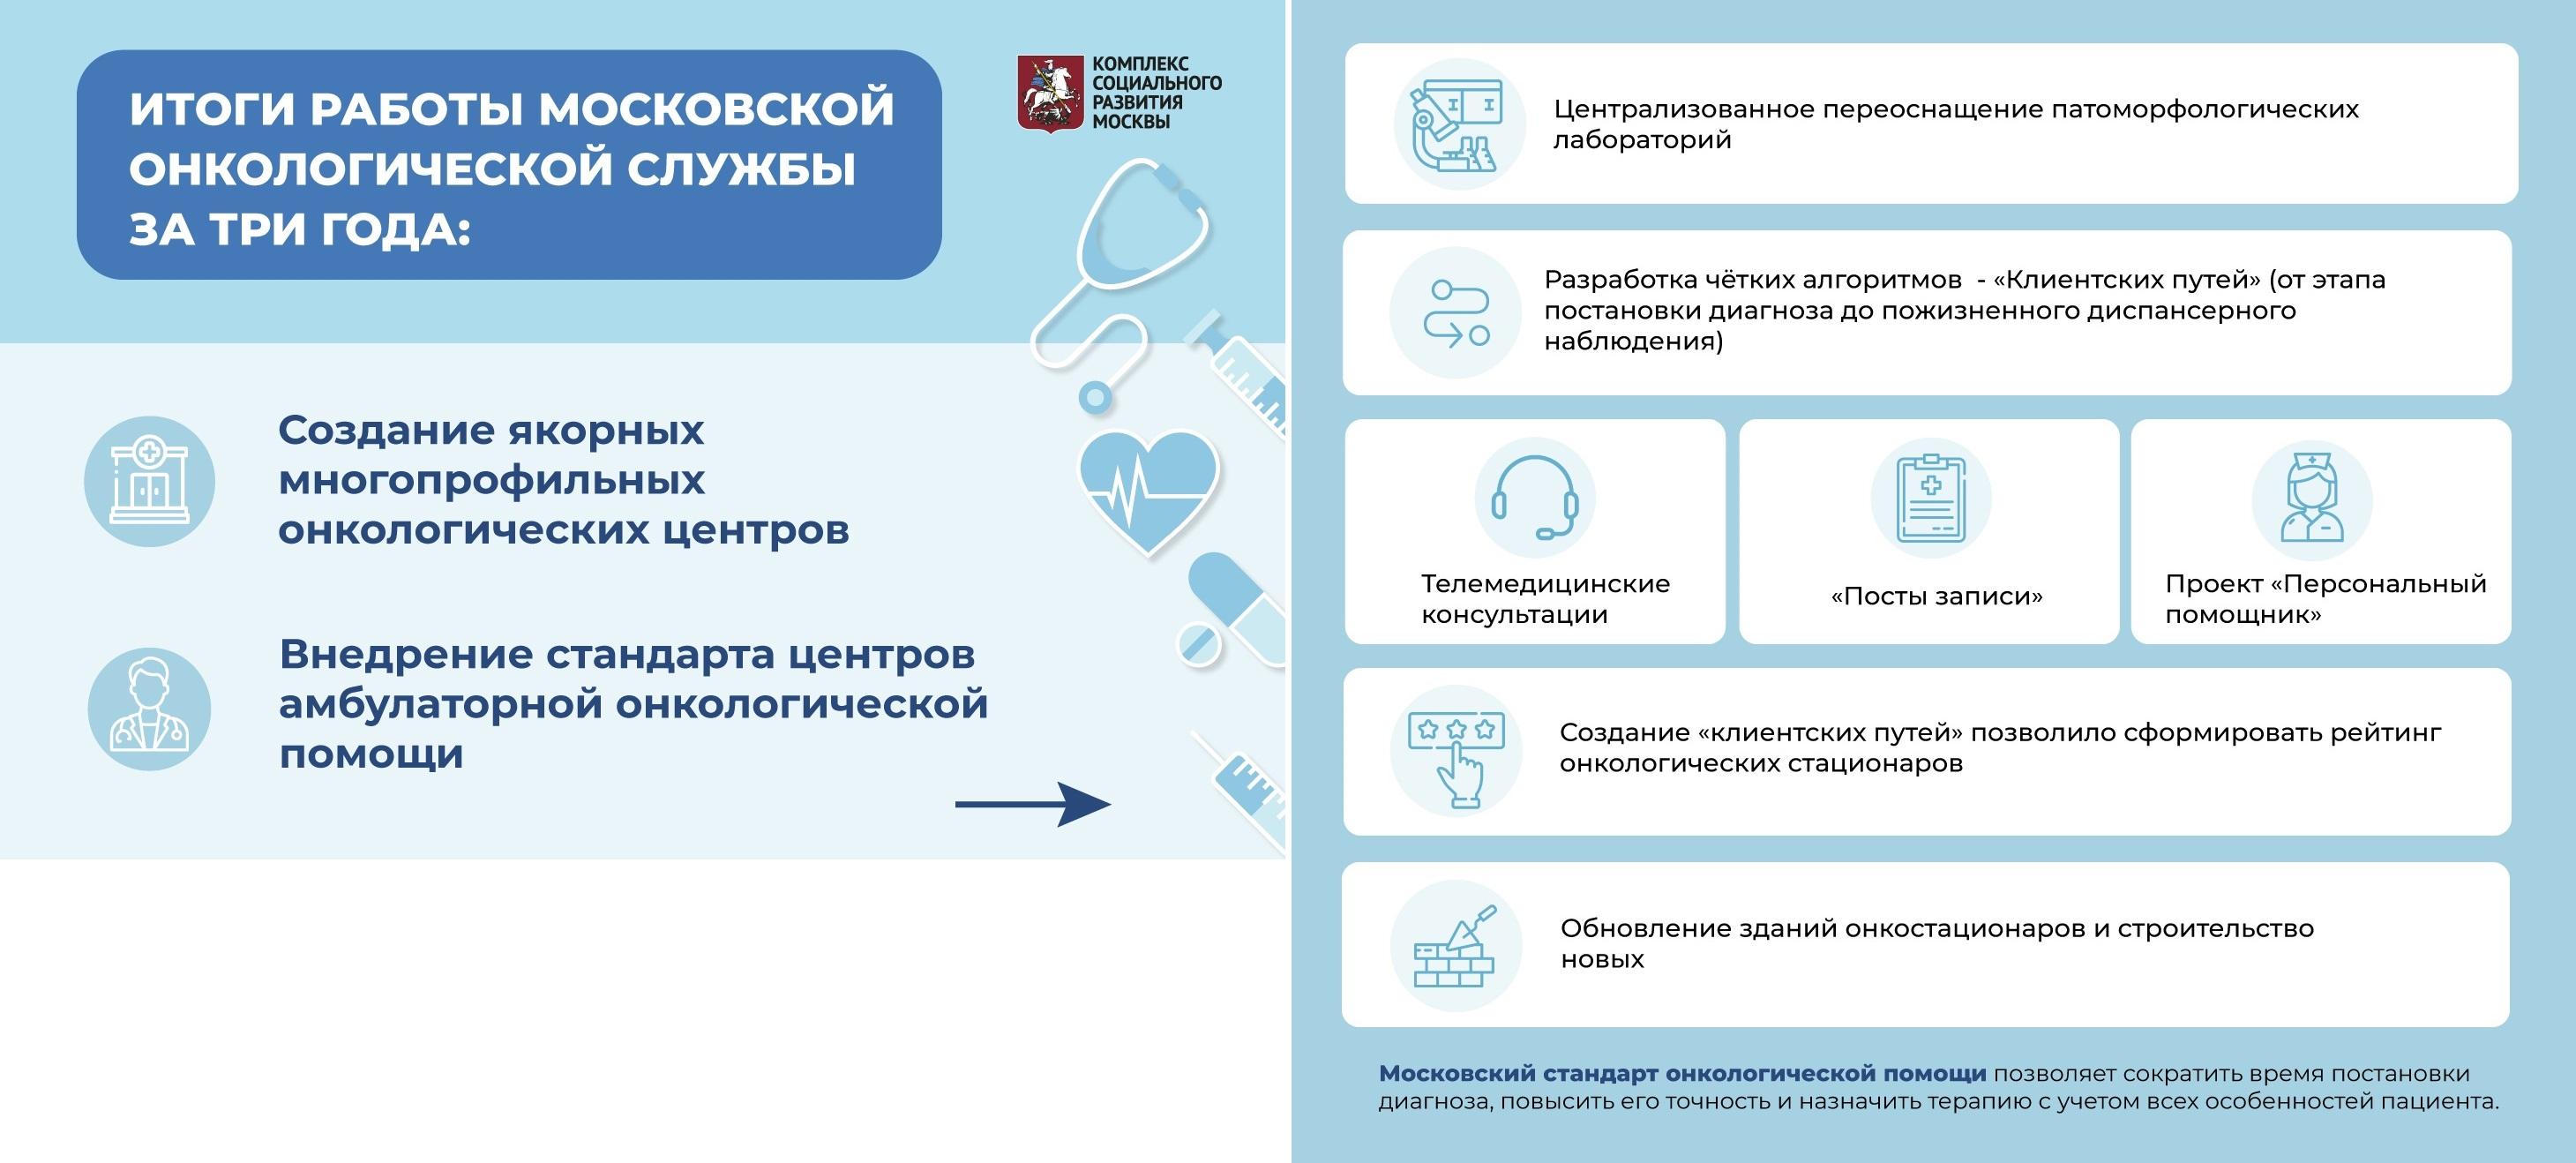 Итоги работы онкологической службы Москвы за три года